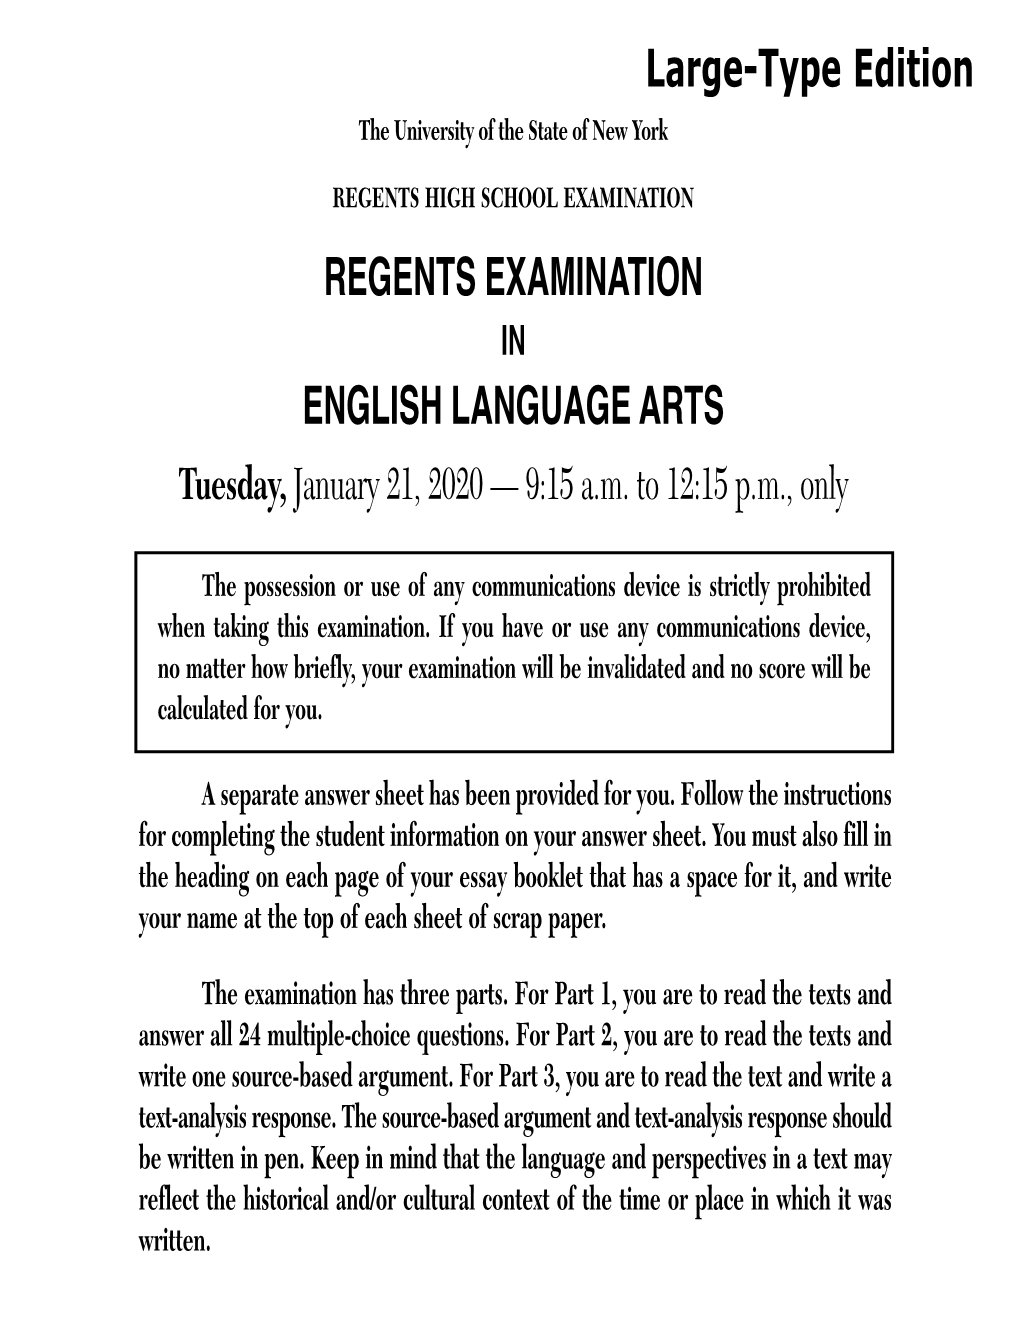 RE English Language Arts, Large Type